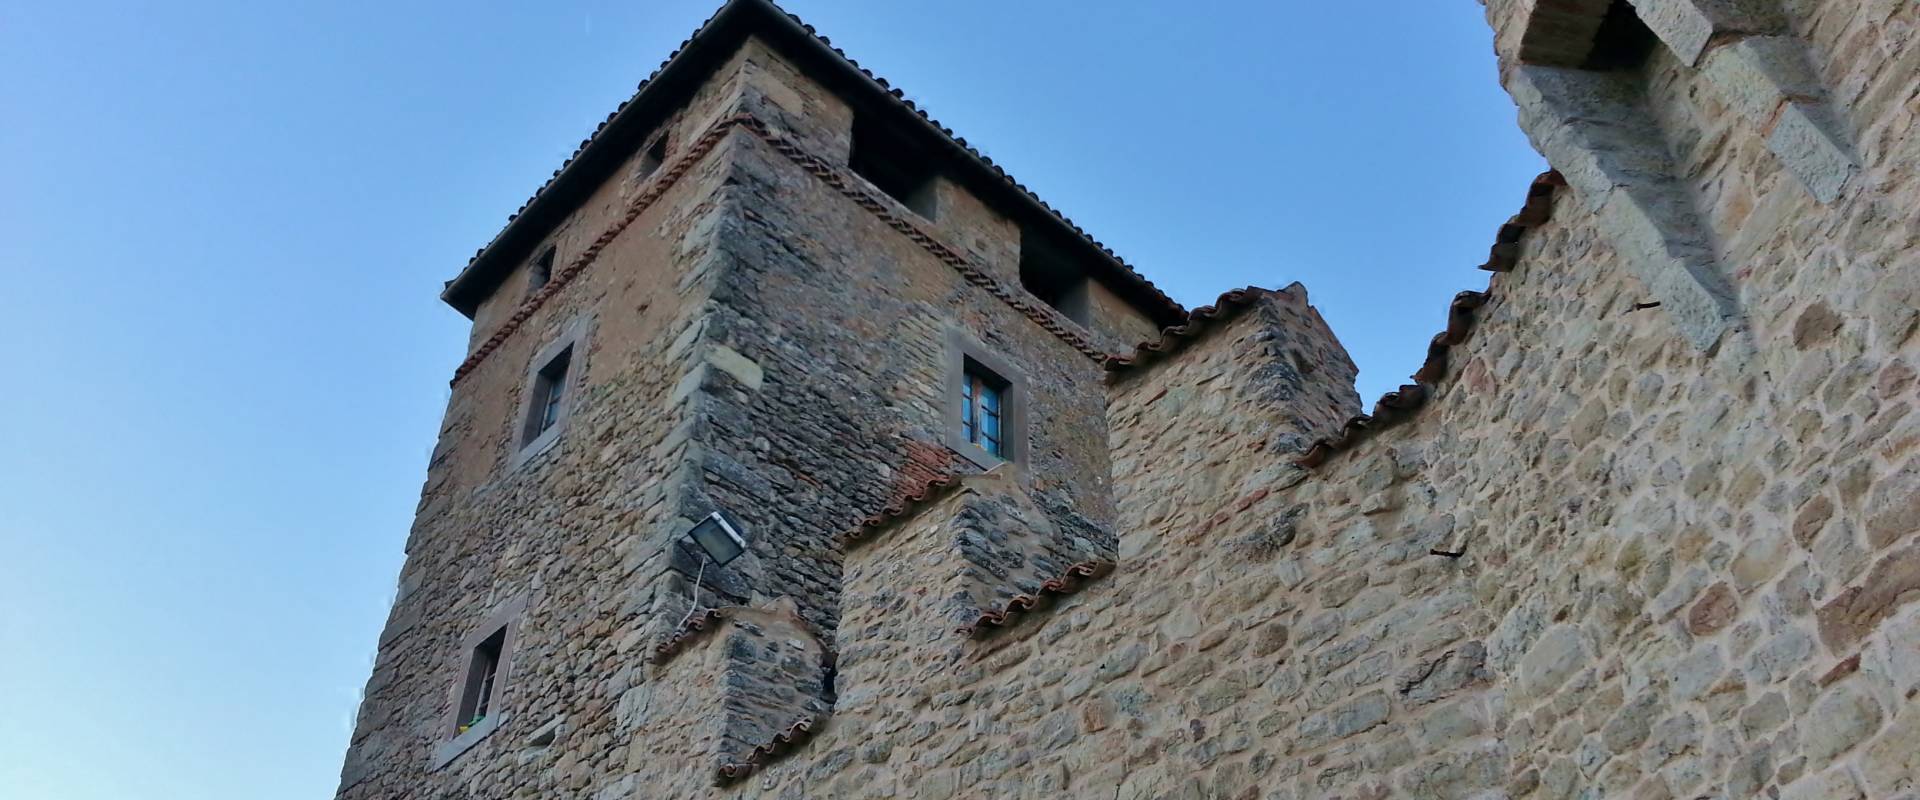 Una torre del Castello di Montecuccolo foto di Giorgia Violini